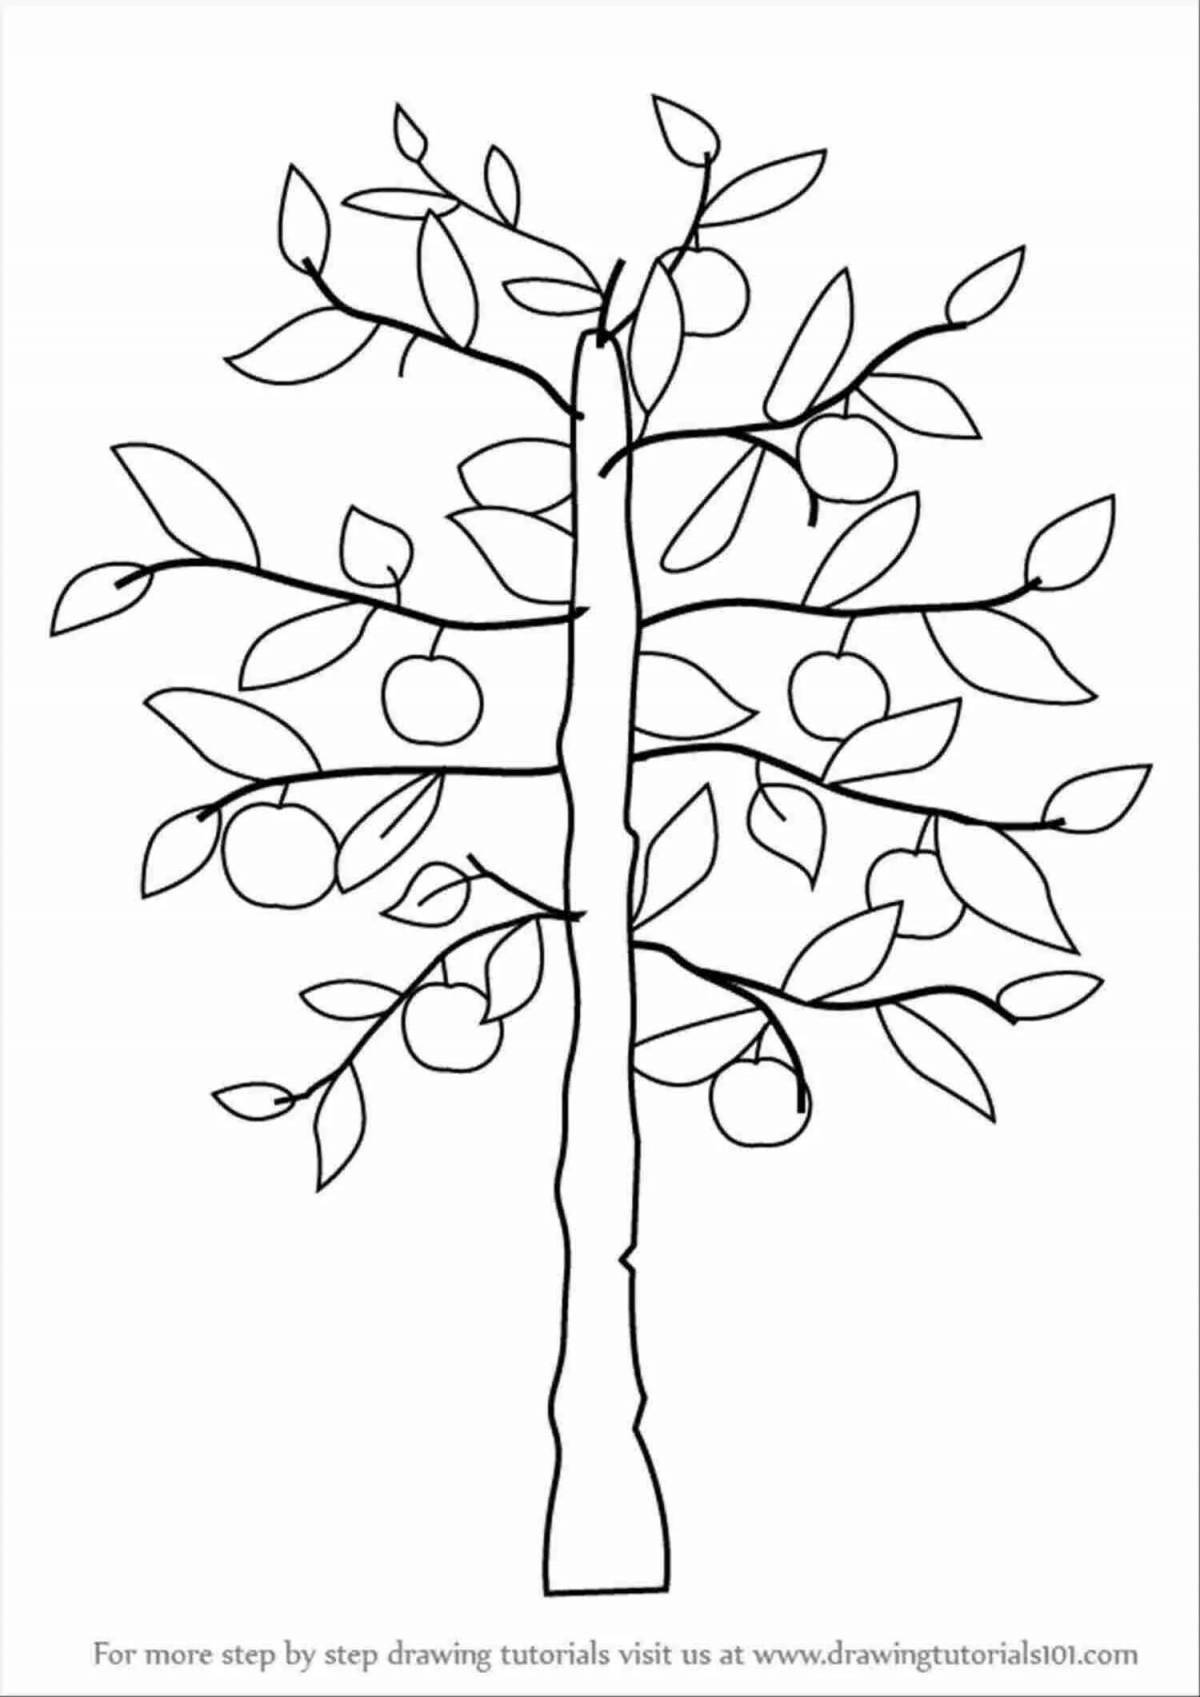 Изысканная страница раскраски раскидистого дерева